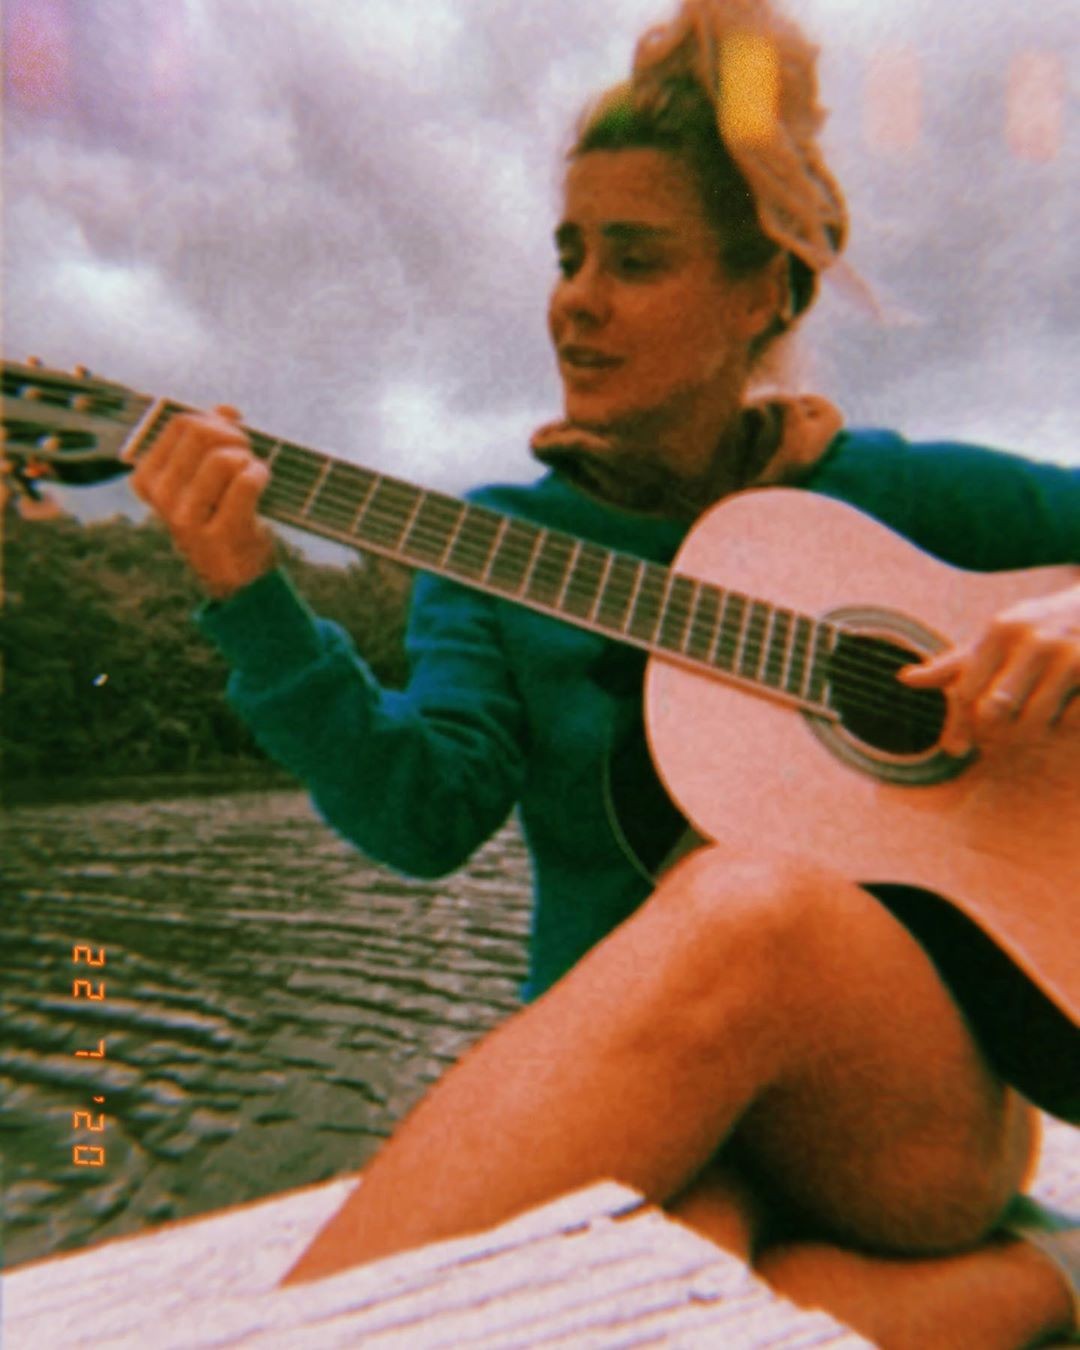 Carolina Dieckmann posta foto tocando violão (Foto: Reprodução/ Instagram)